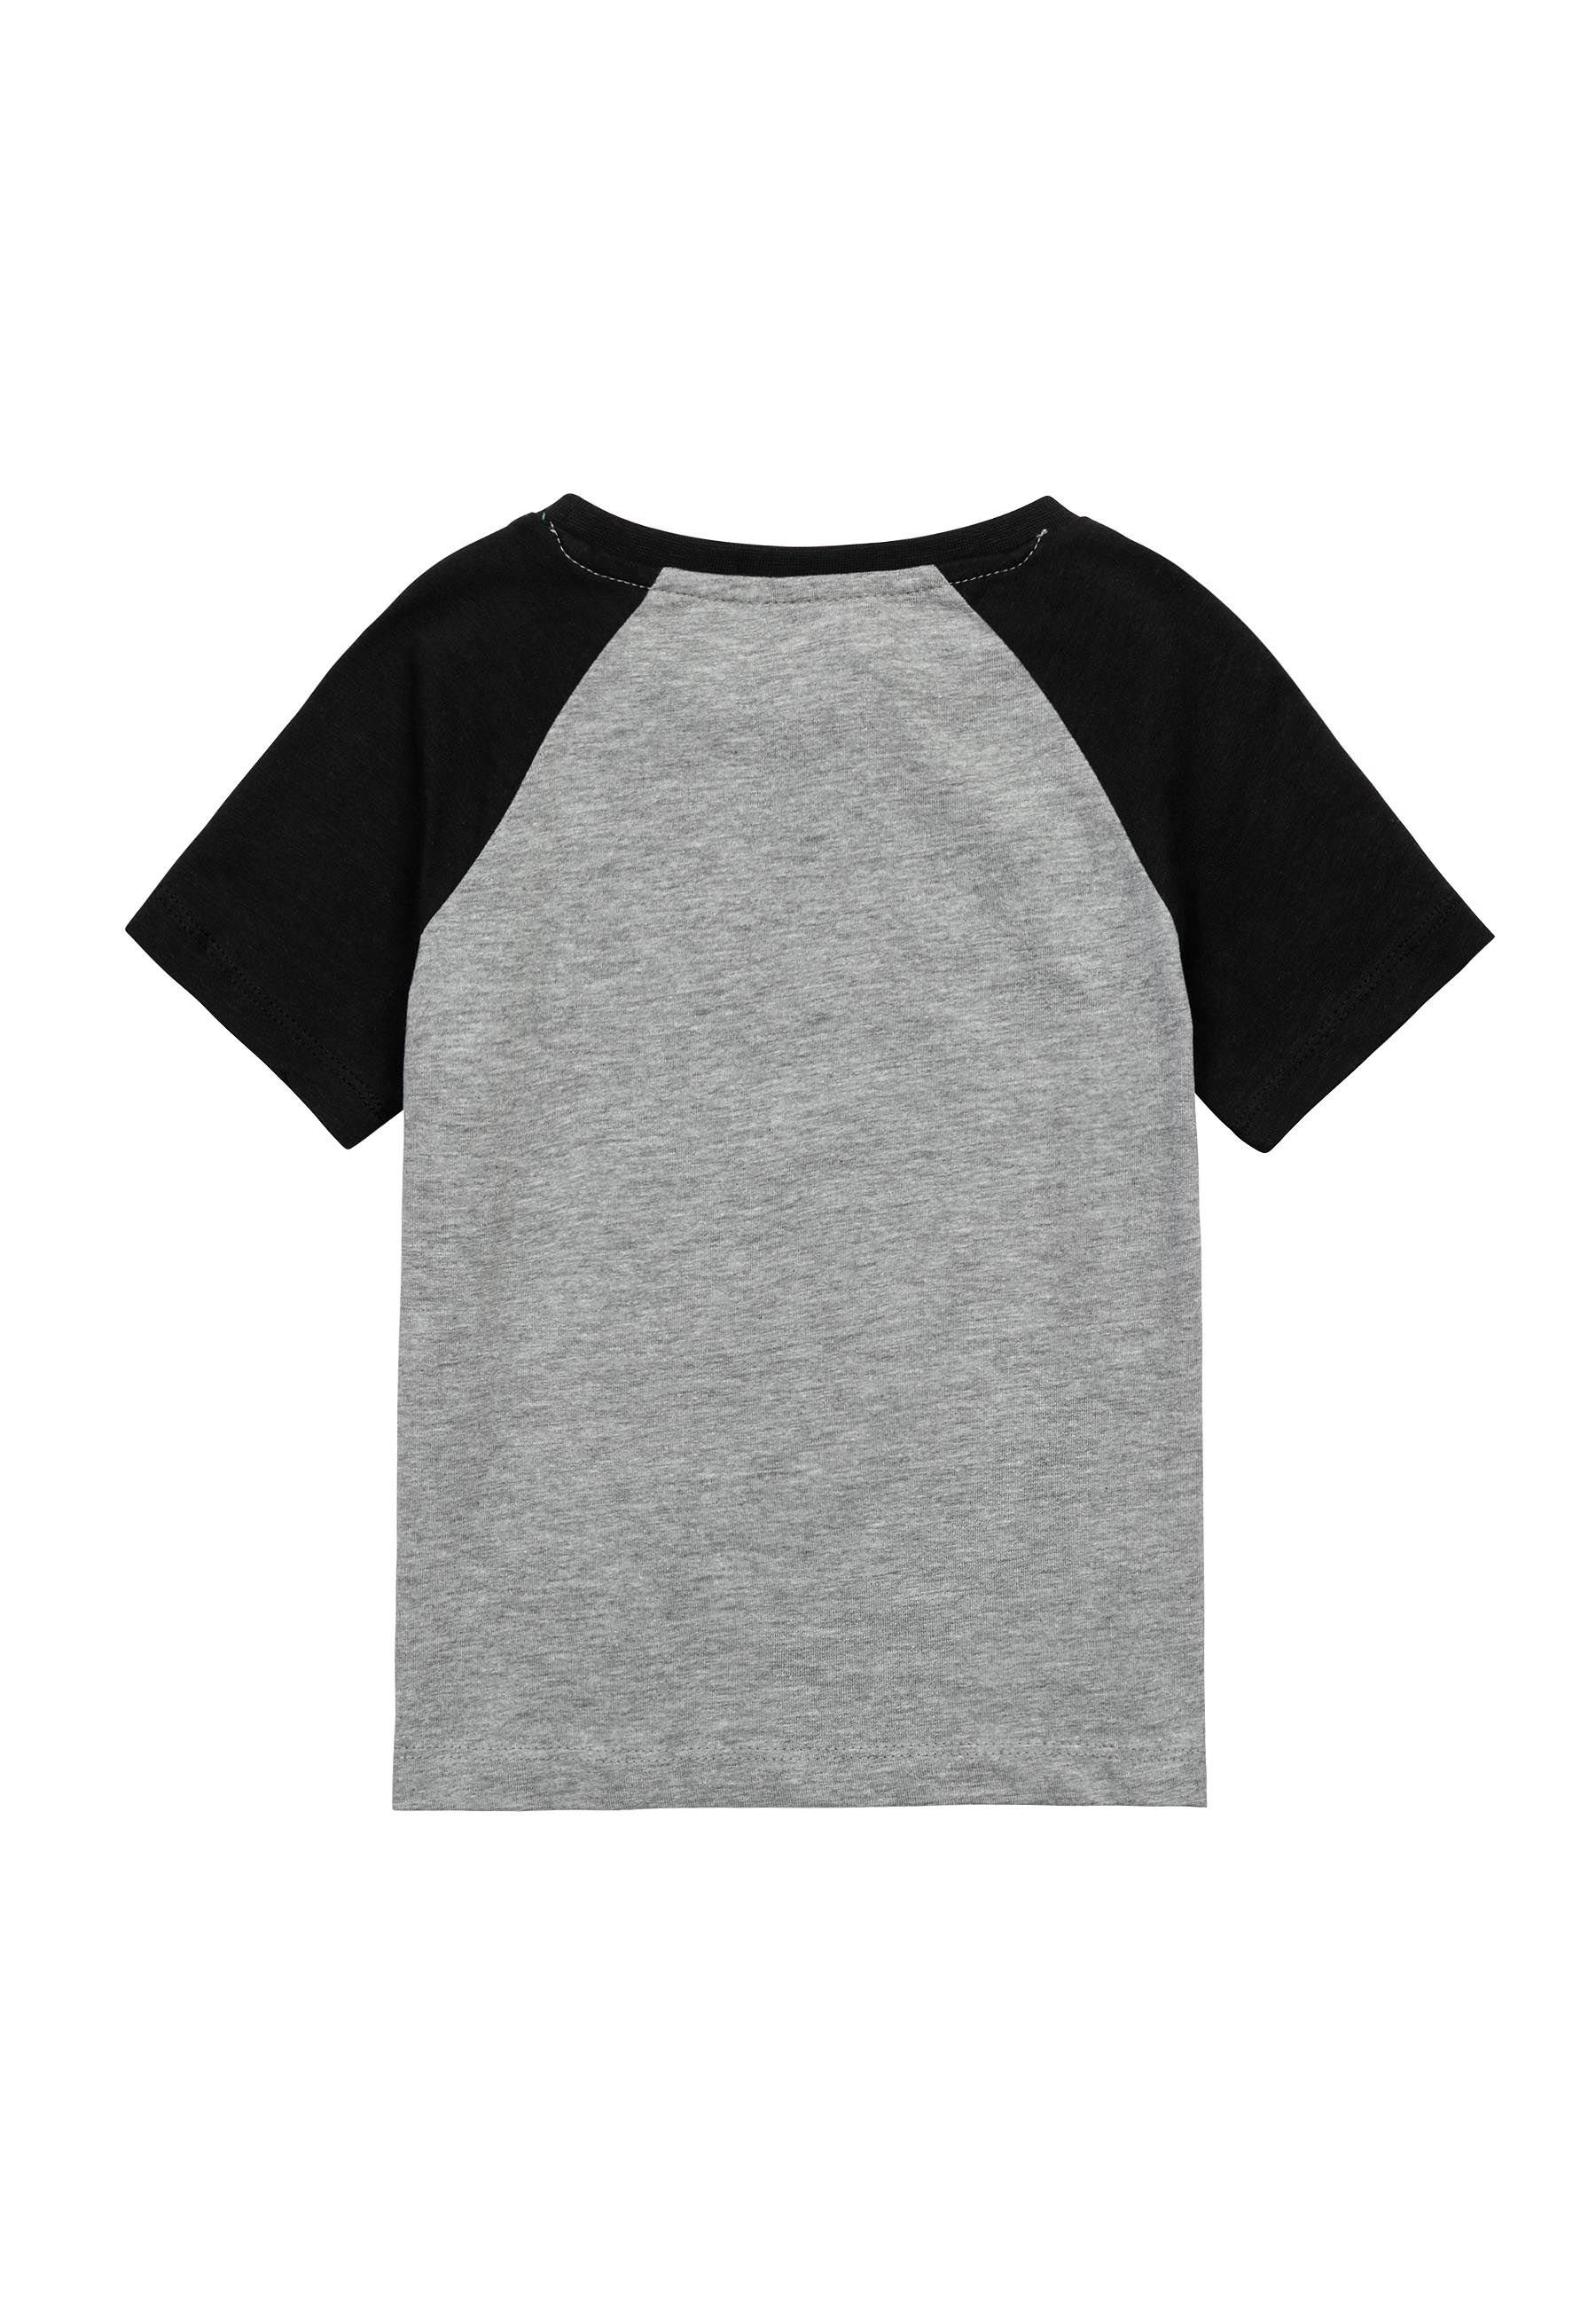 T-Shirt Grau T-Shirt Sommer MINOTI bunten Ärmeln (3y-14y) mit